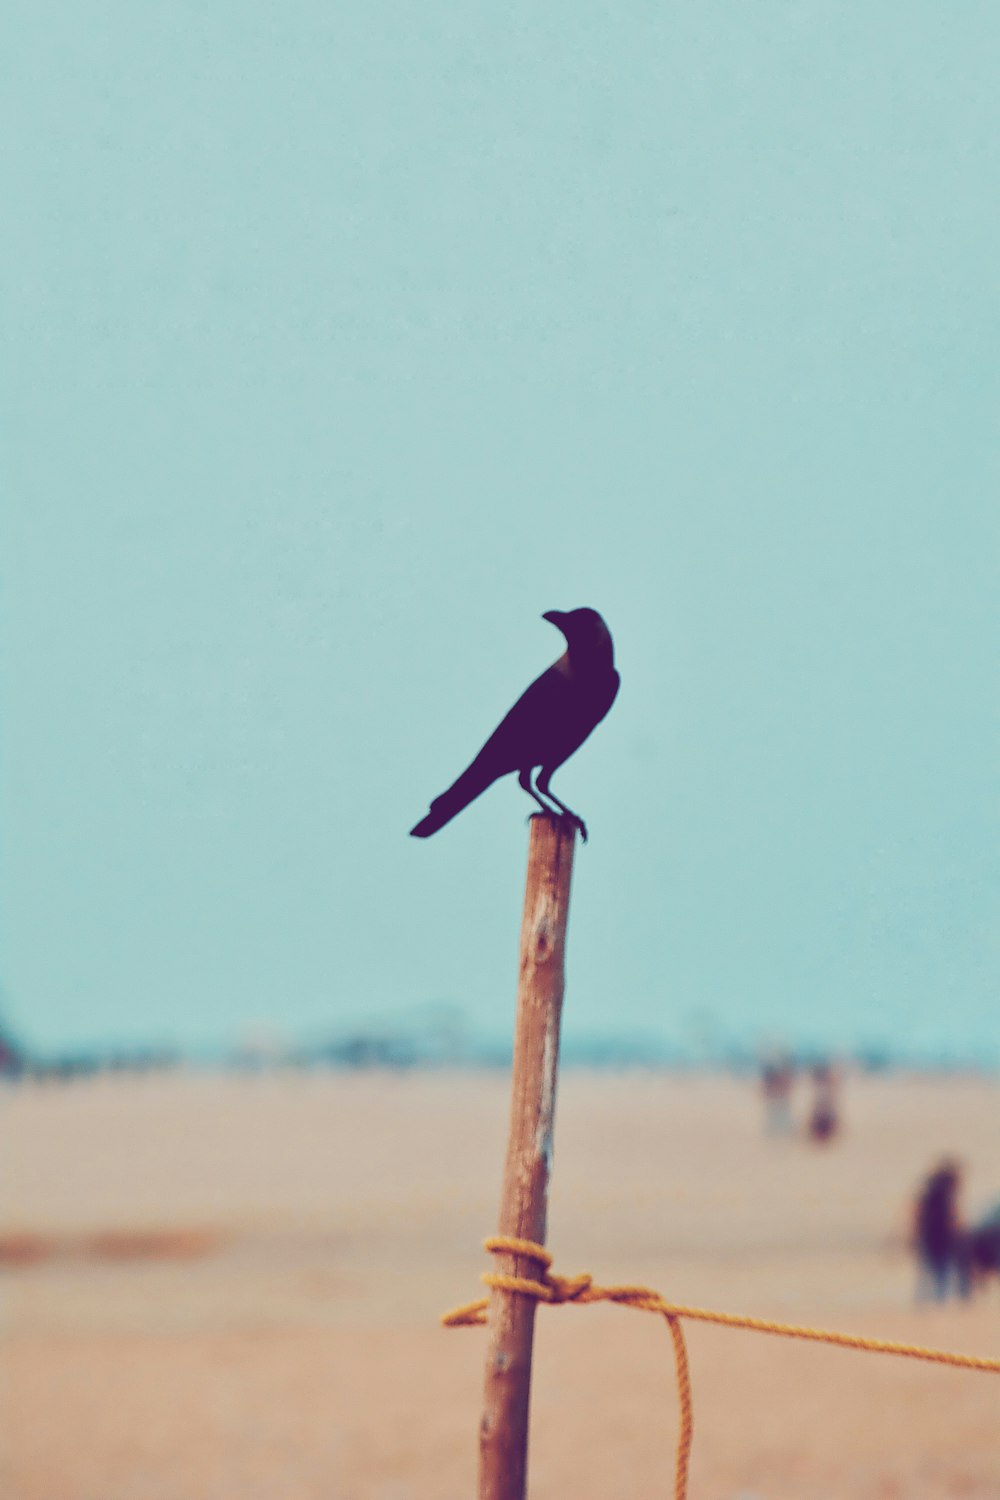 blue bird on brown wooden stick during daytime